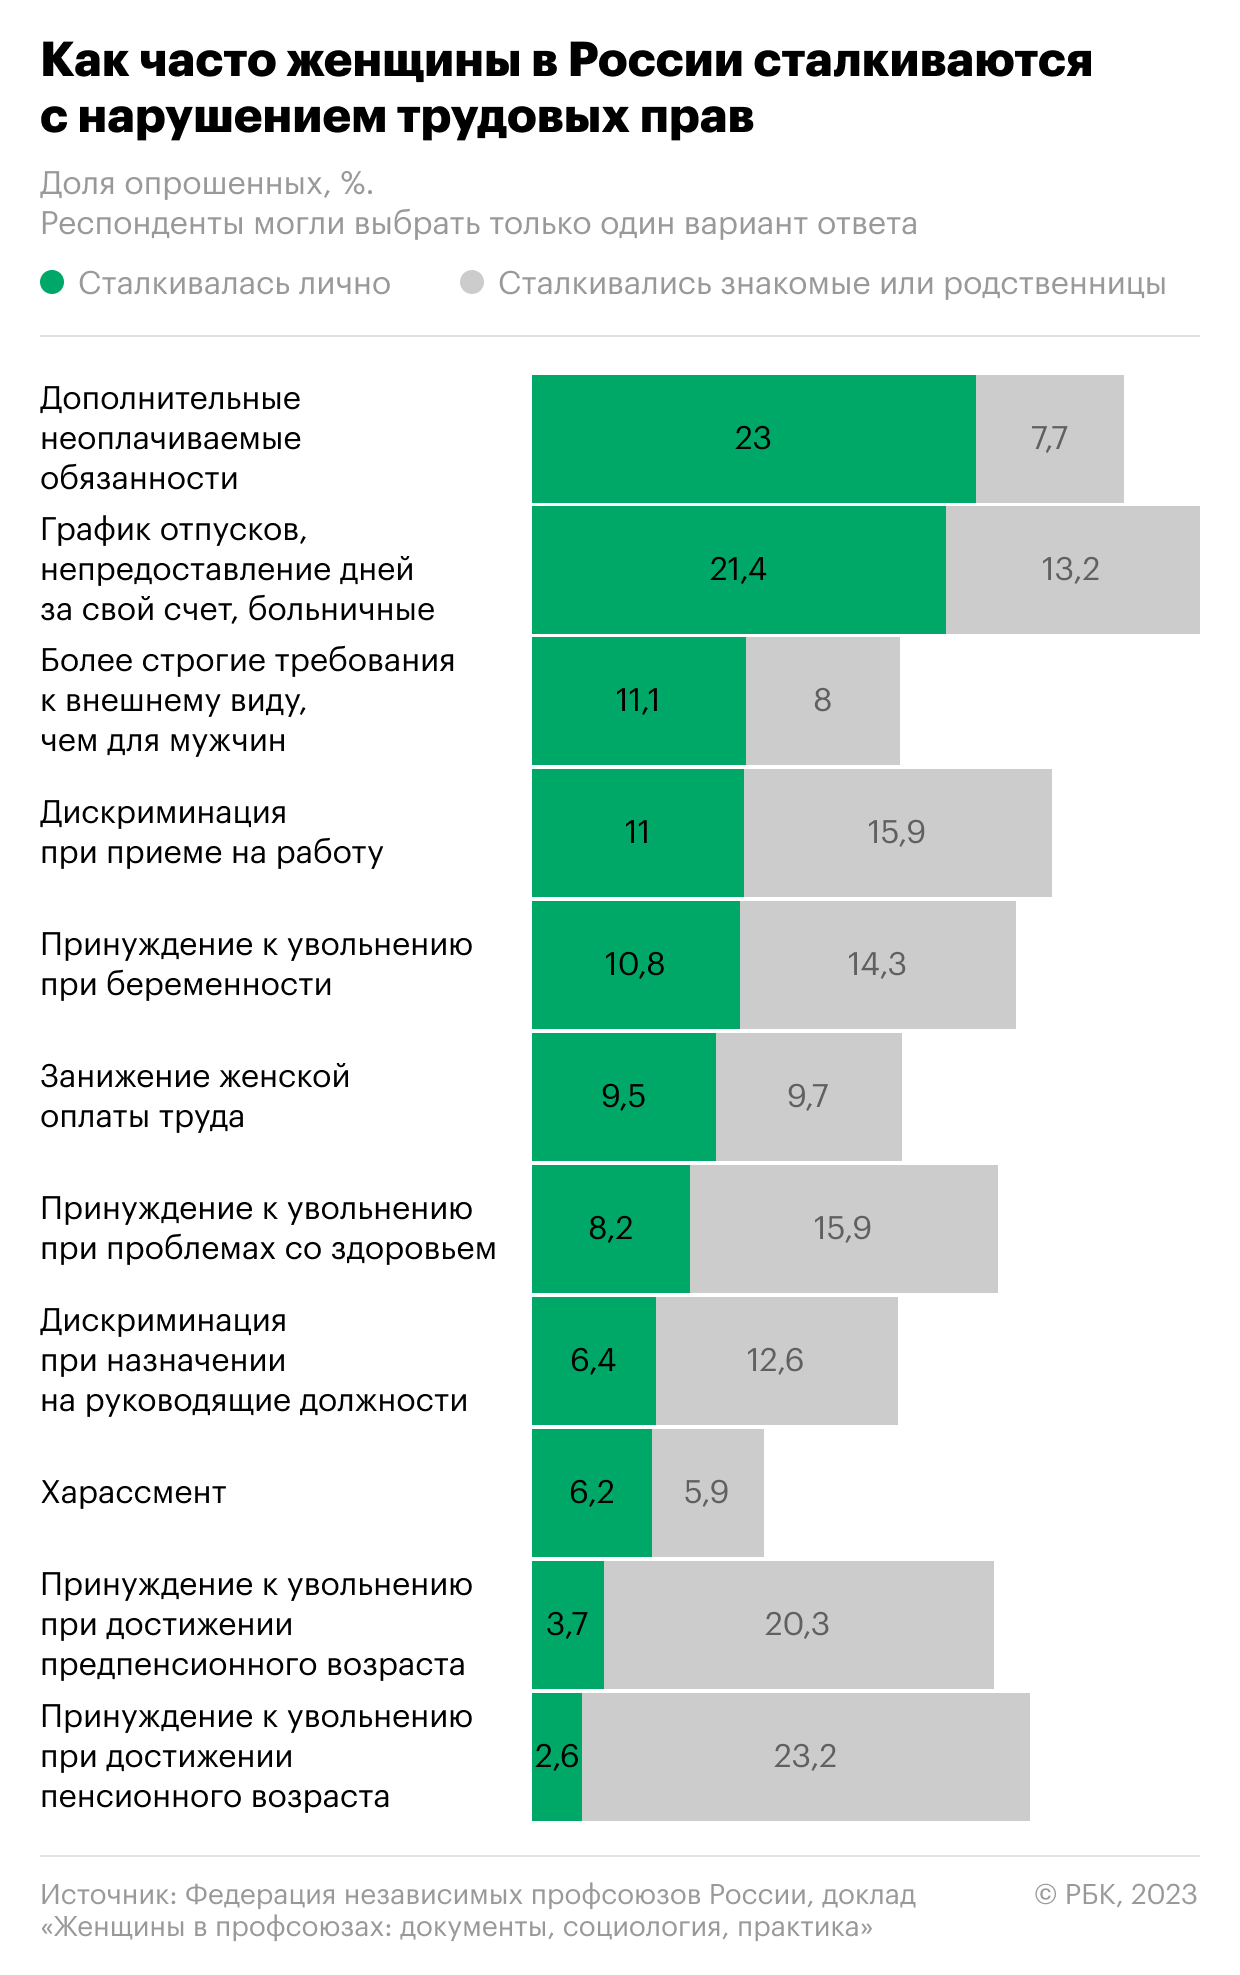 Профсоюзы назвали основные нарушения трудовых прав женщин в России1